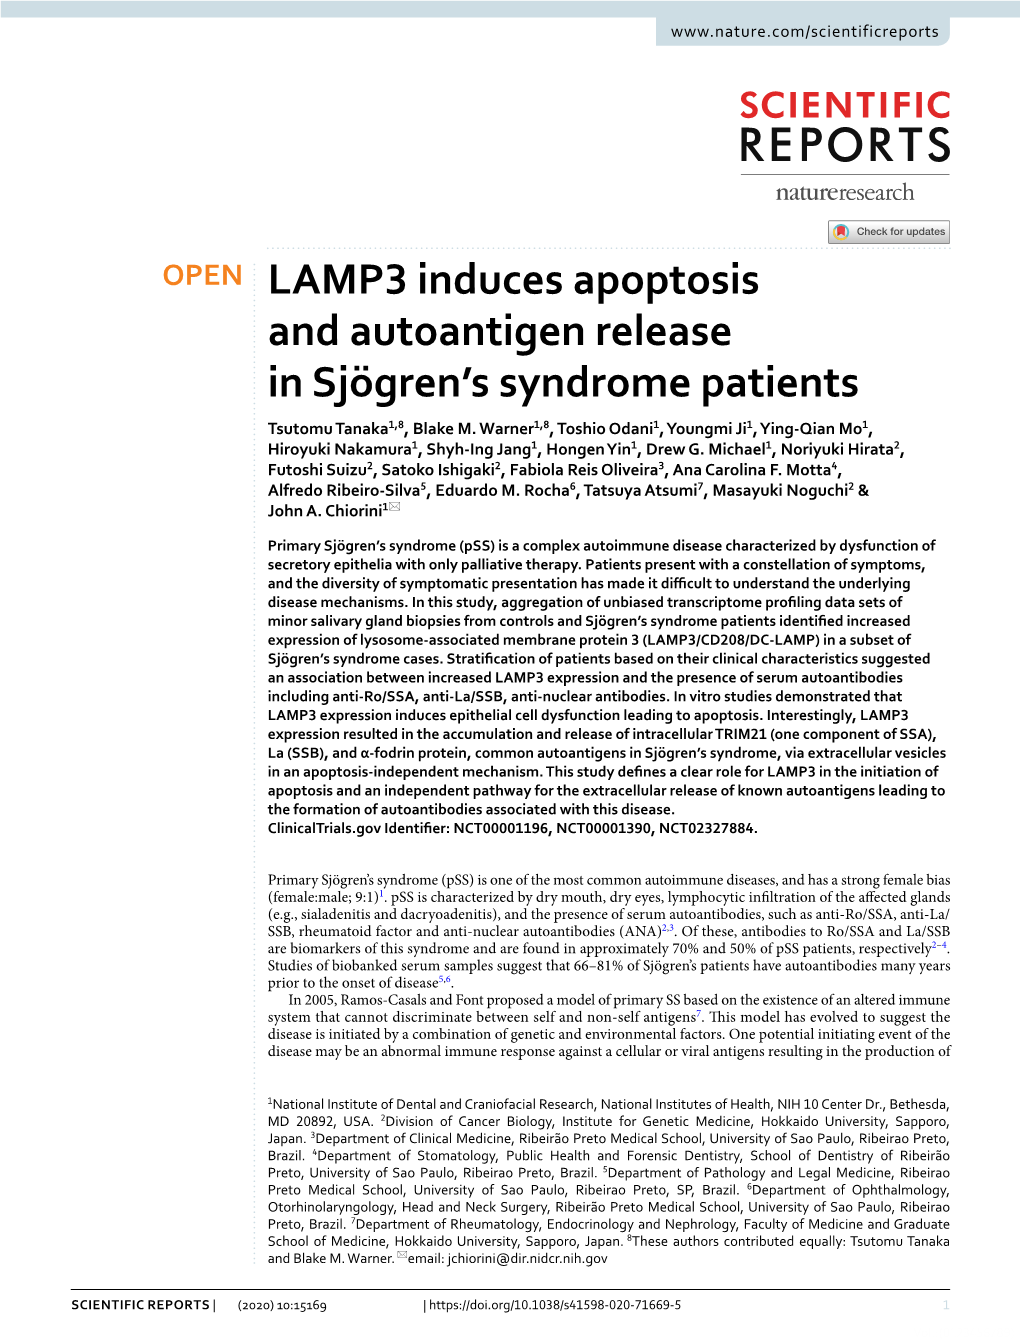 LAMP3 Induces Apoptosis and Autoantigen Release in Sjögren's